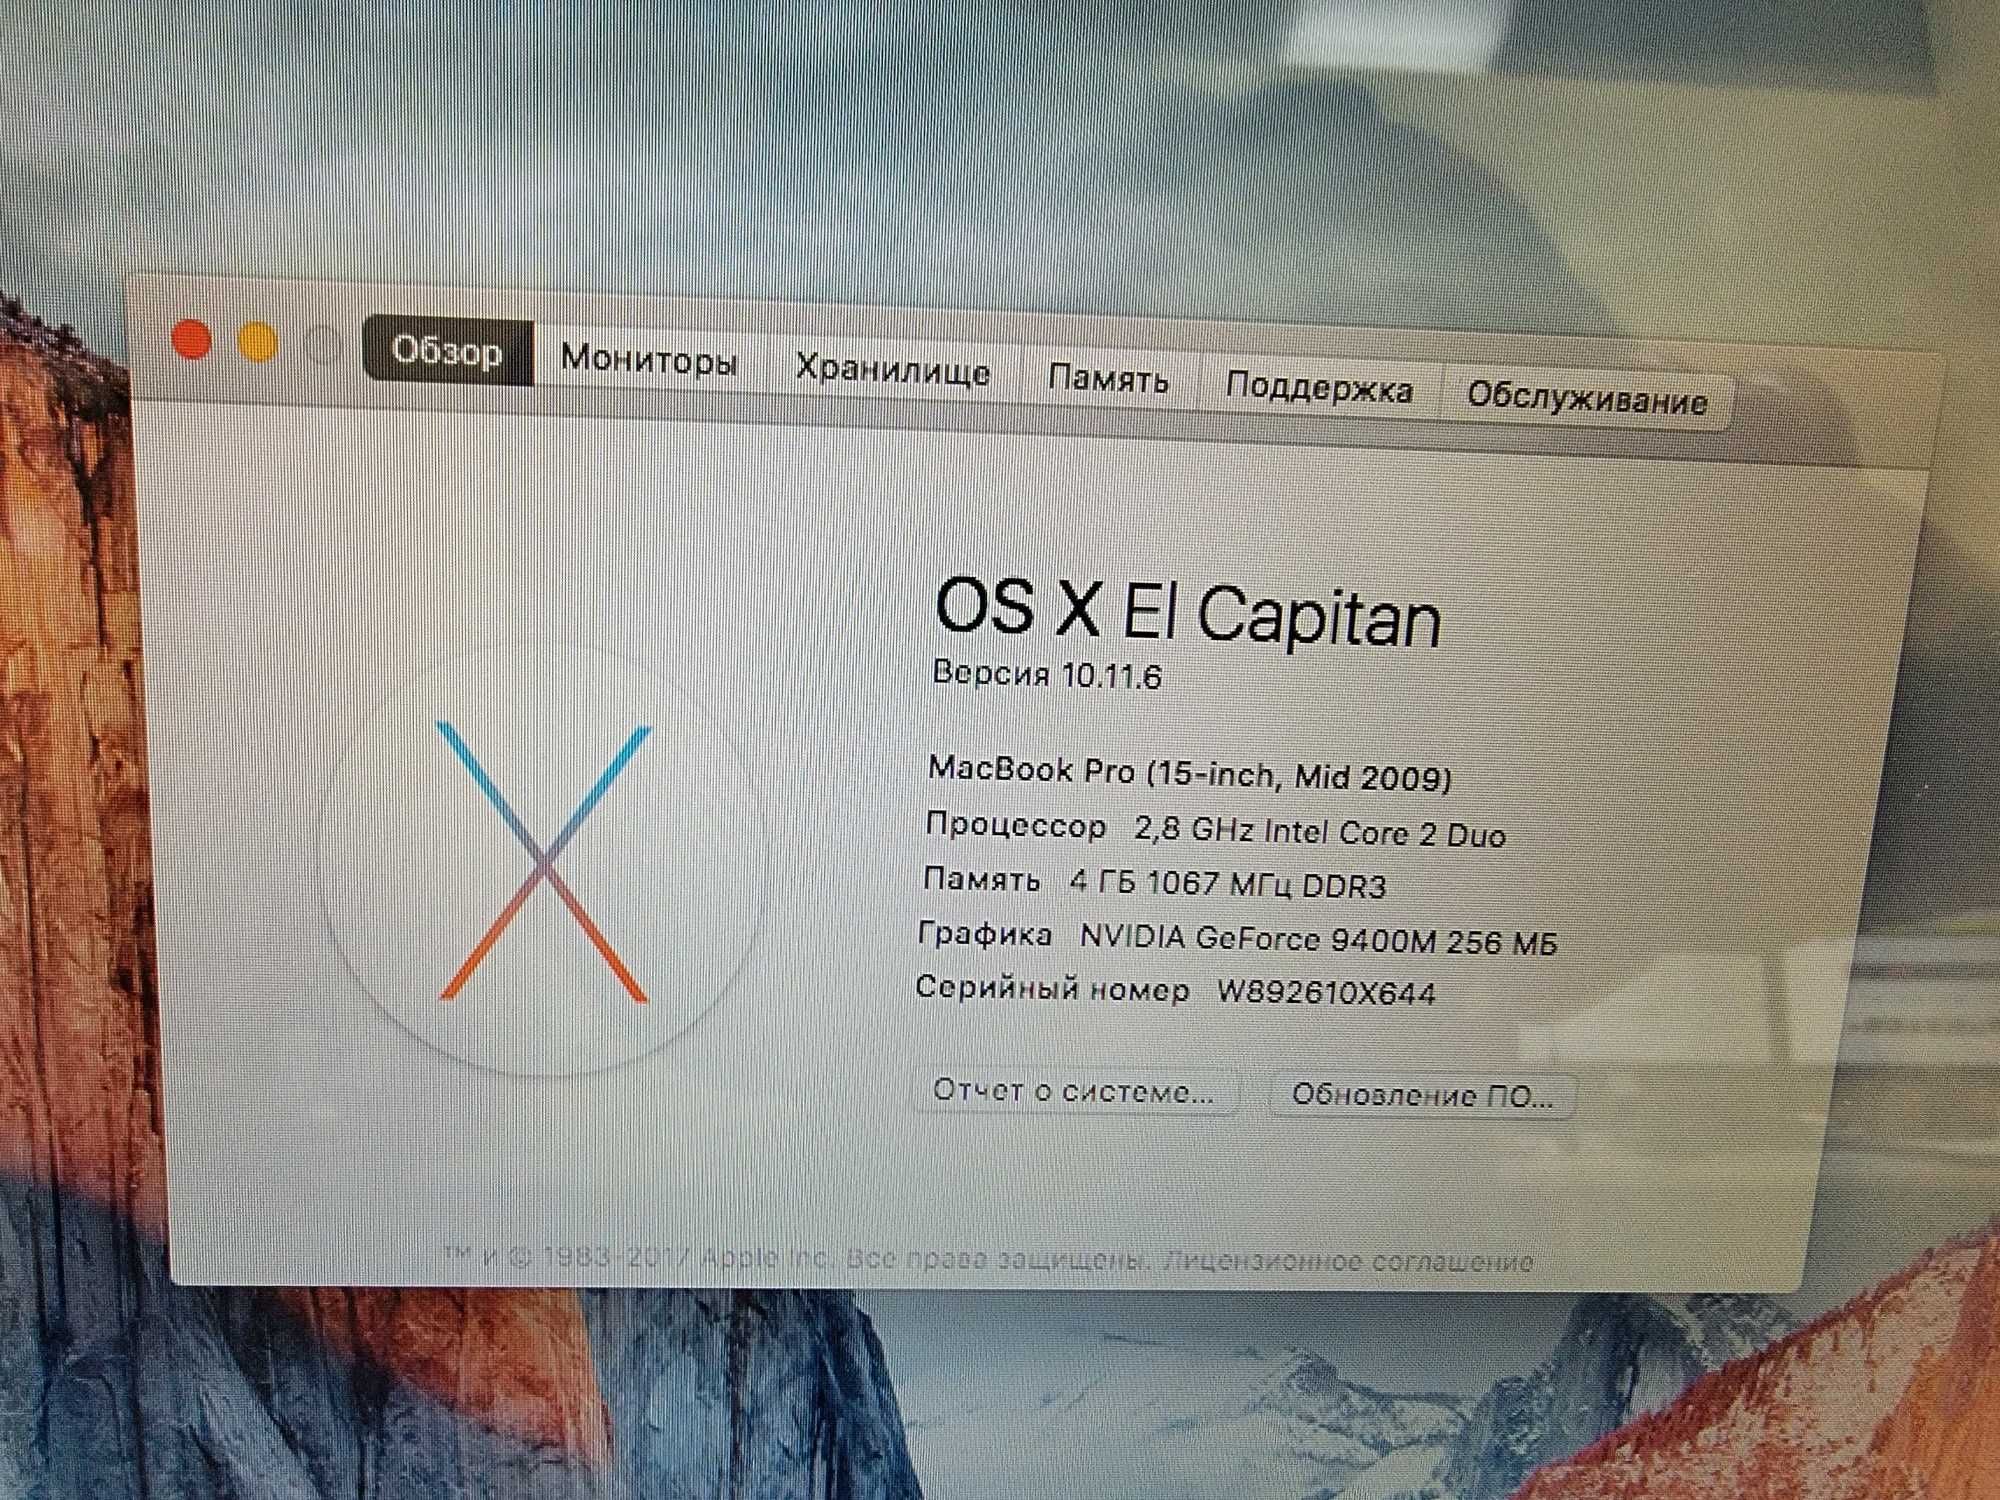 Унікальна пропозиція! MacBook Pro 15-inch доступний для продажу!